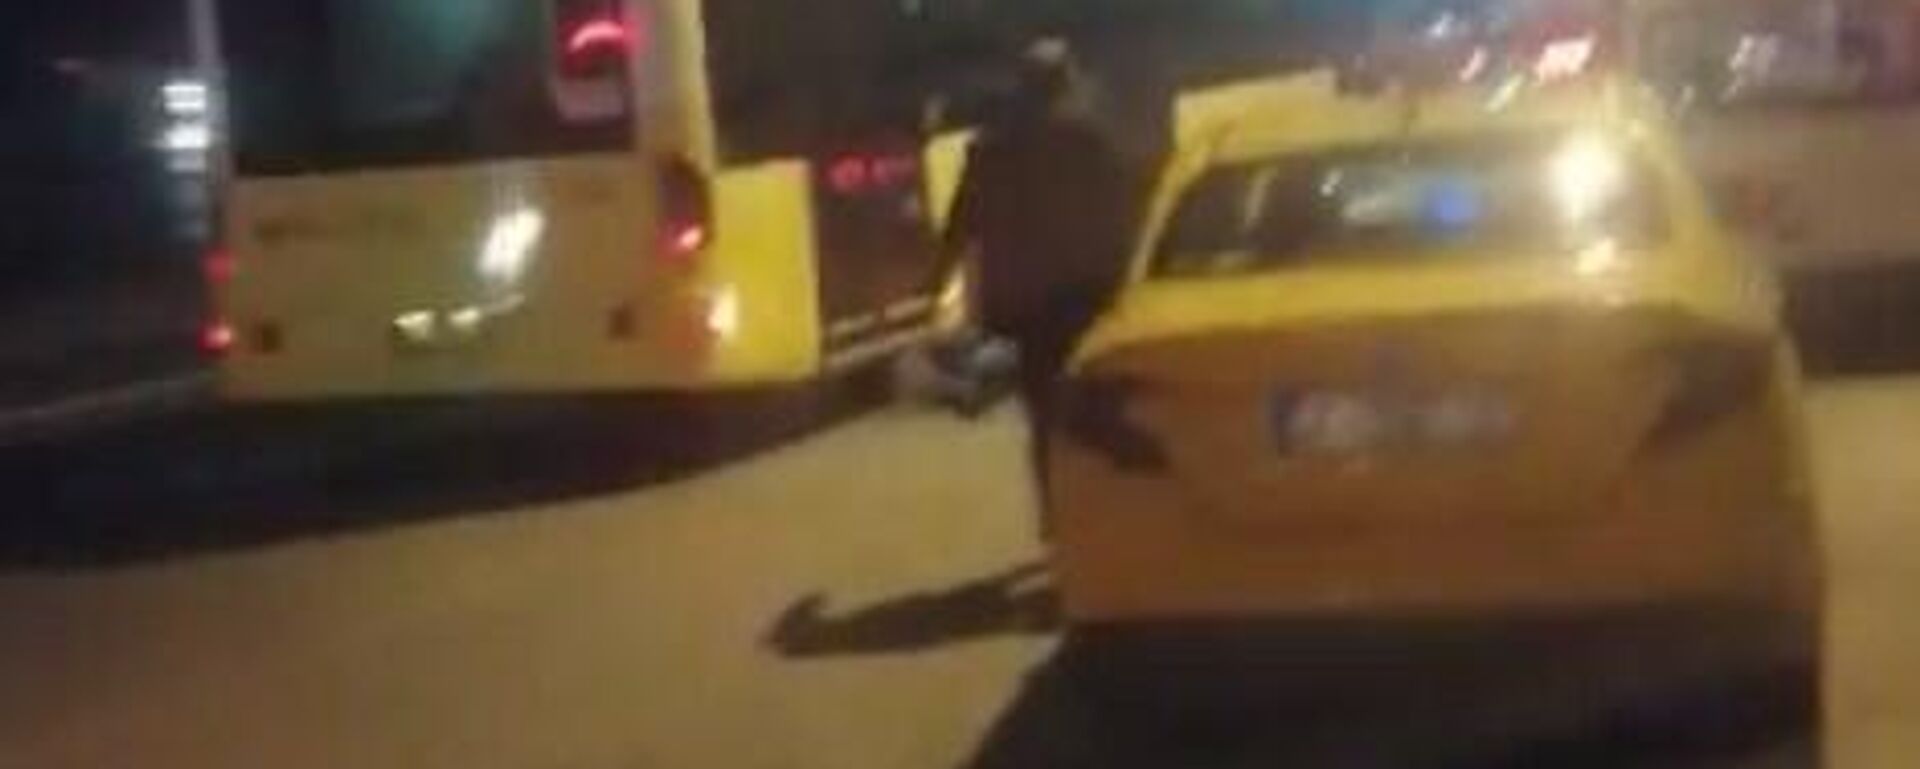 Beyoğlu'nda bir kadın tartıştığı taksicinin itmesi sonucu otobüsün altında kalmaktan son anda kurtuldu. Korku dolu anlar kameralara yansırken, taksicinin taksi sürücü belgesi ise iptal edildi. - Sputnik Türkiye, 1920, 05.12.2021